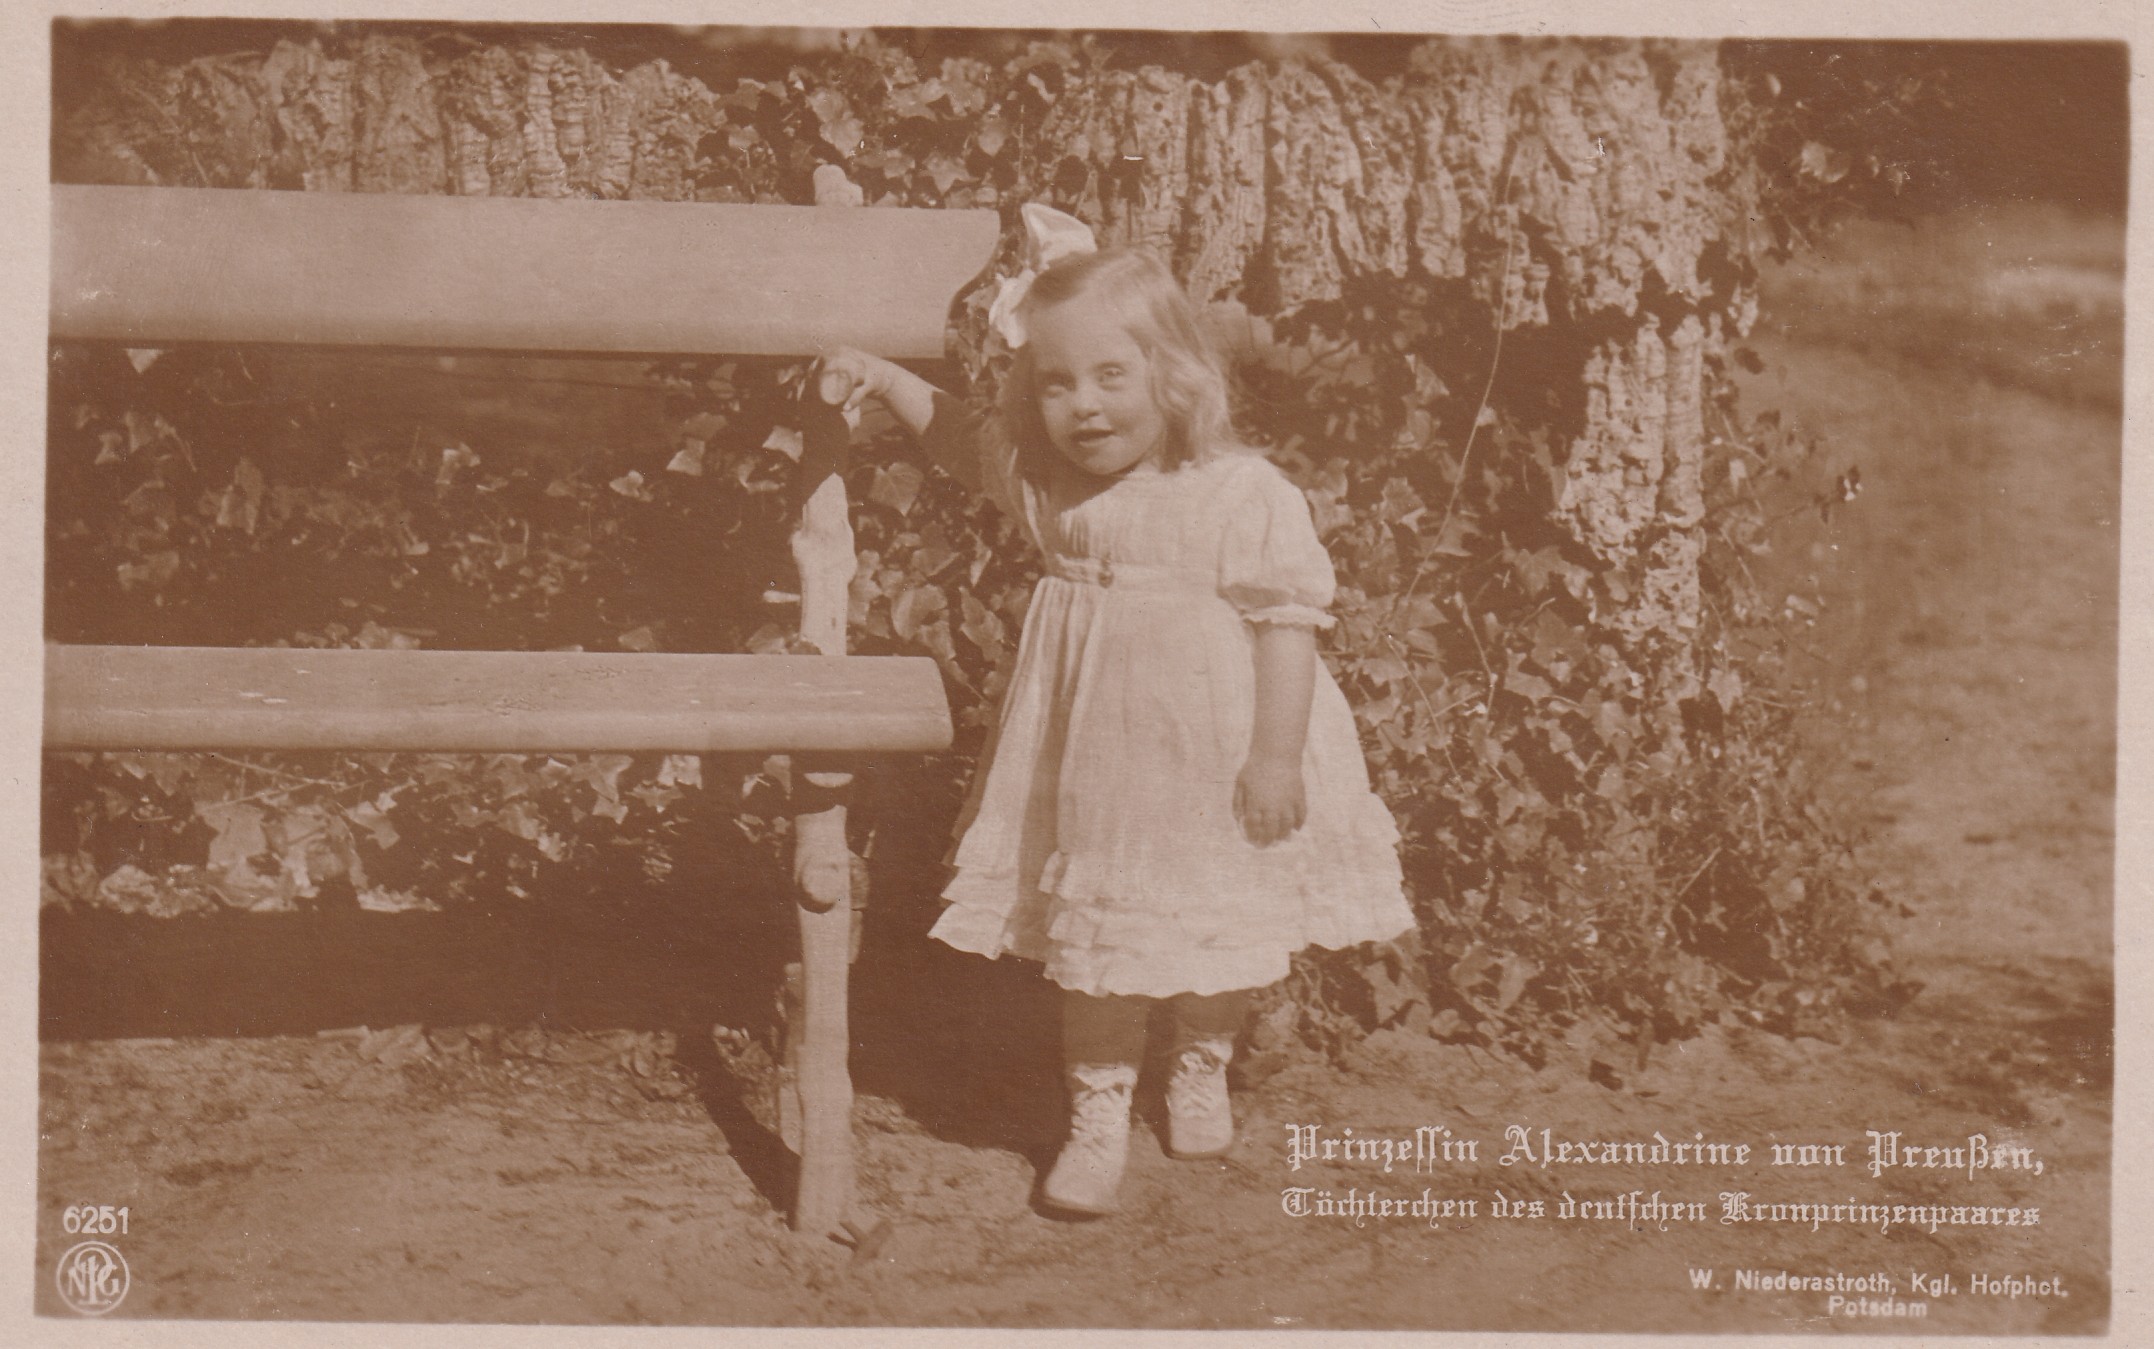 Bildpostkarte mit Foto der Prinzessin Alexandrine von Preußen (1915-1980) neben einer Gartenbank, 1917. (Schloß Wernigerode GmbH RR-F)